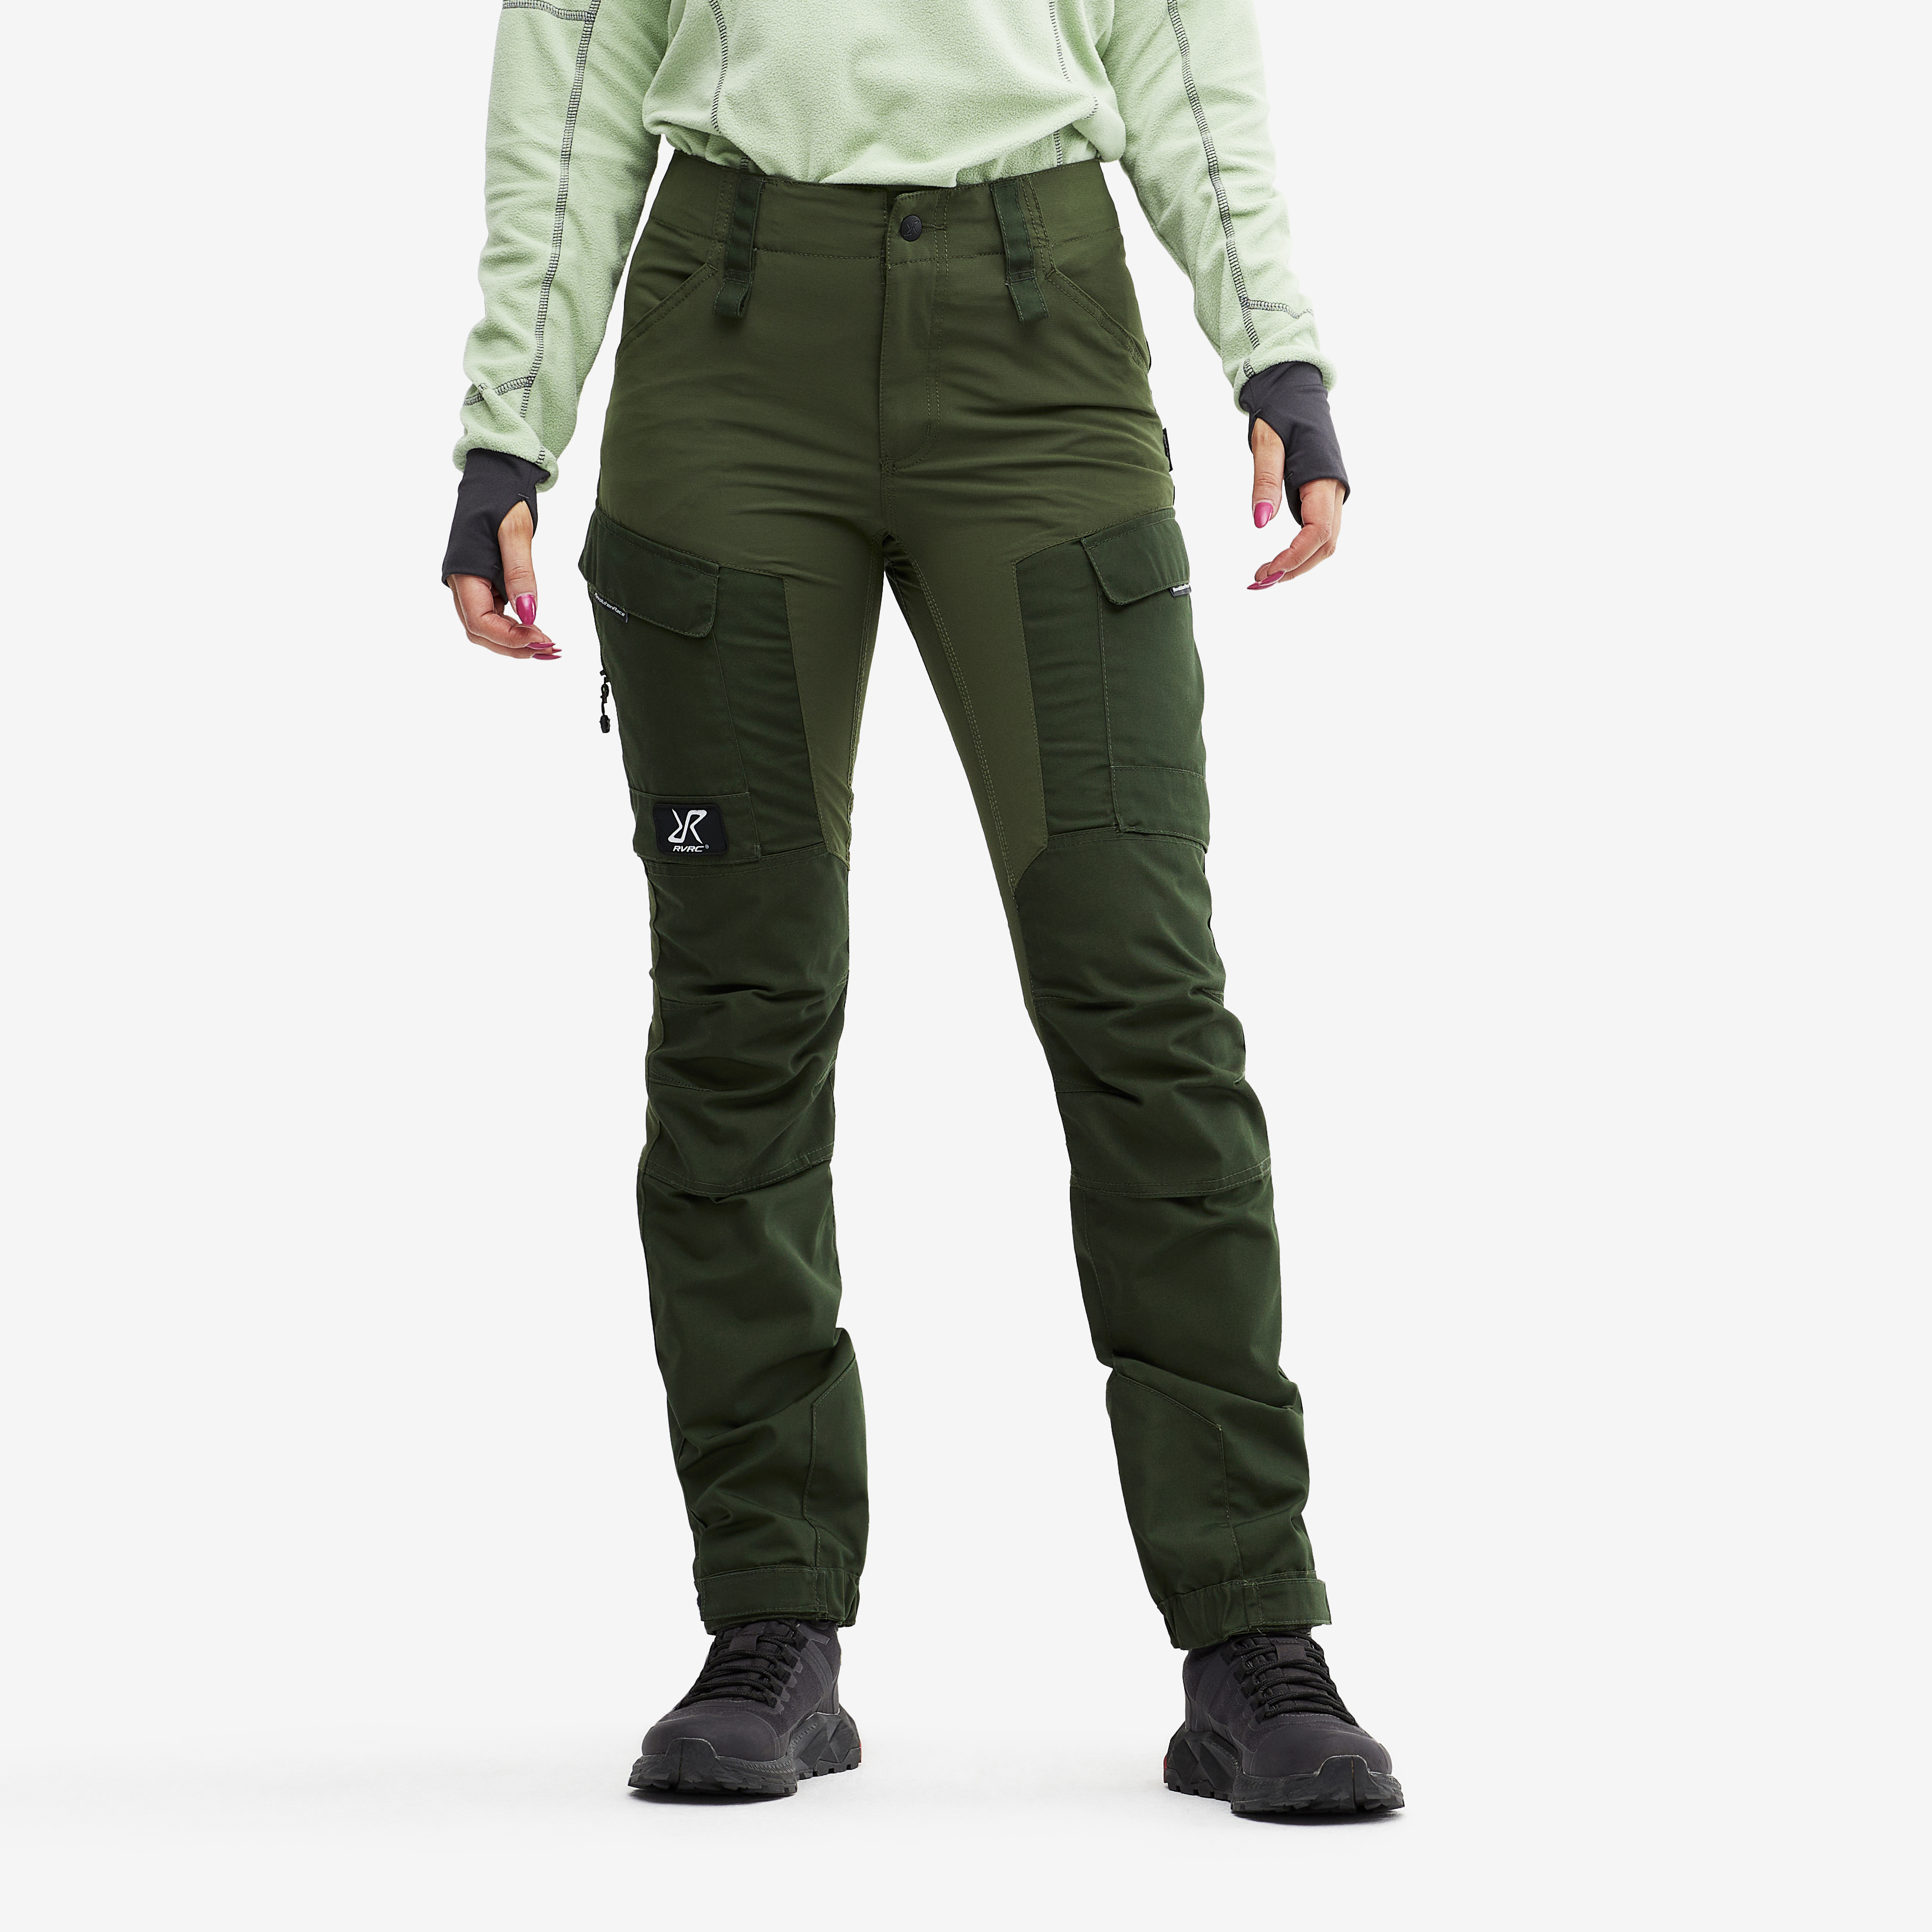 Pantalones outdoor RVRC GP para mujer en verde